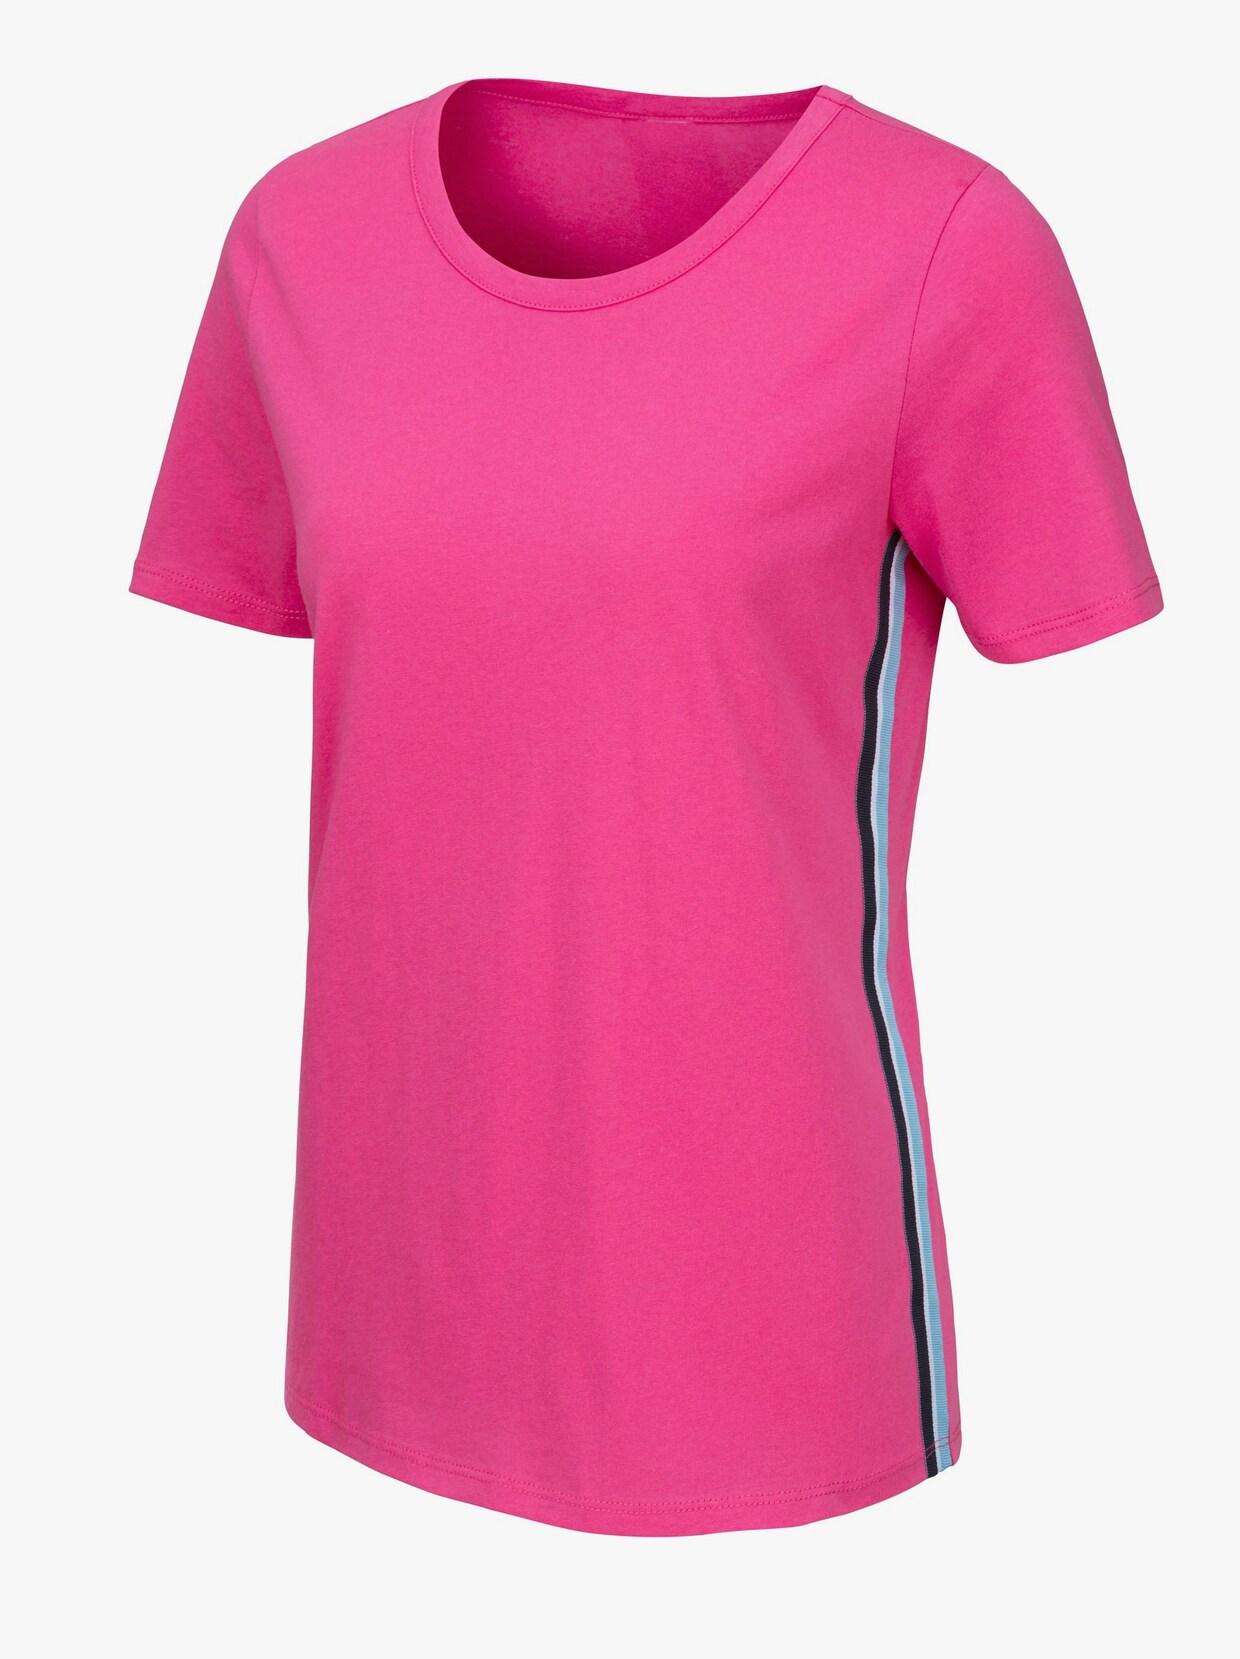 Kurzarmshirt - pink